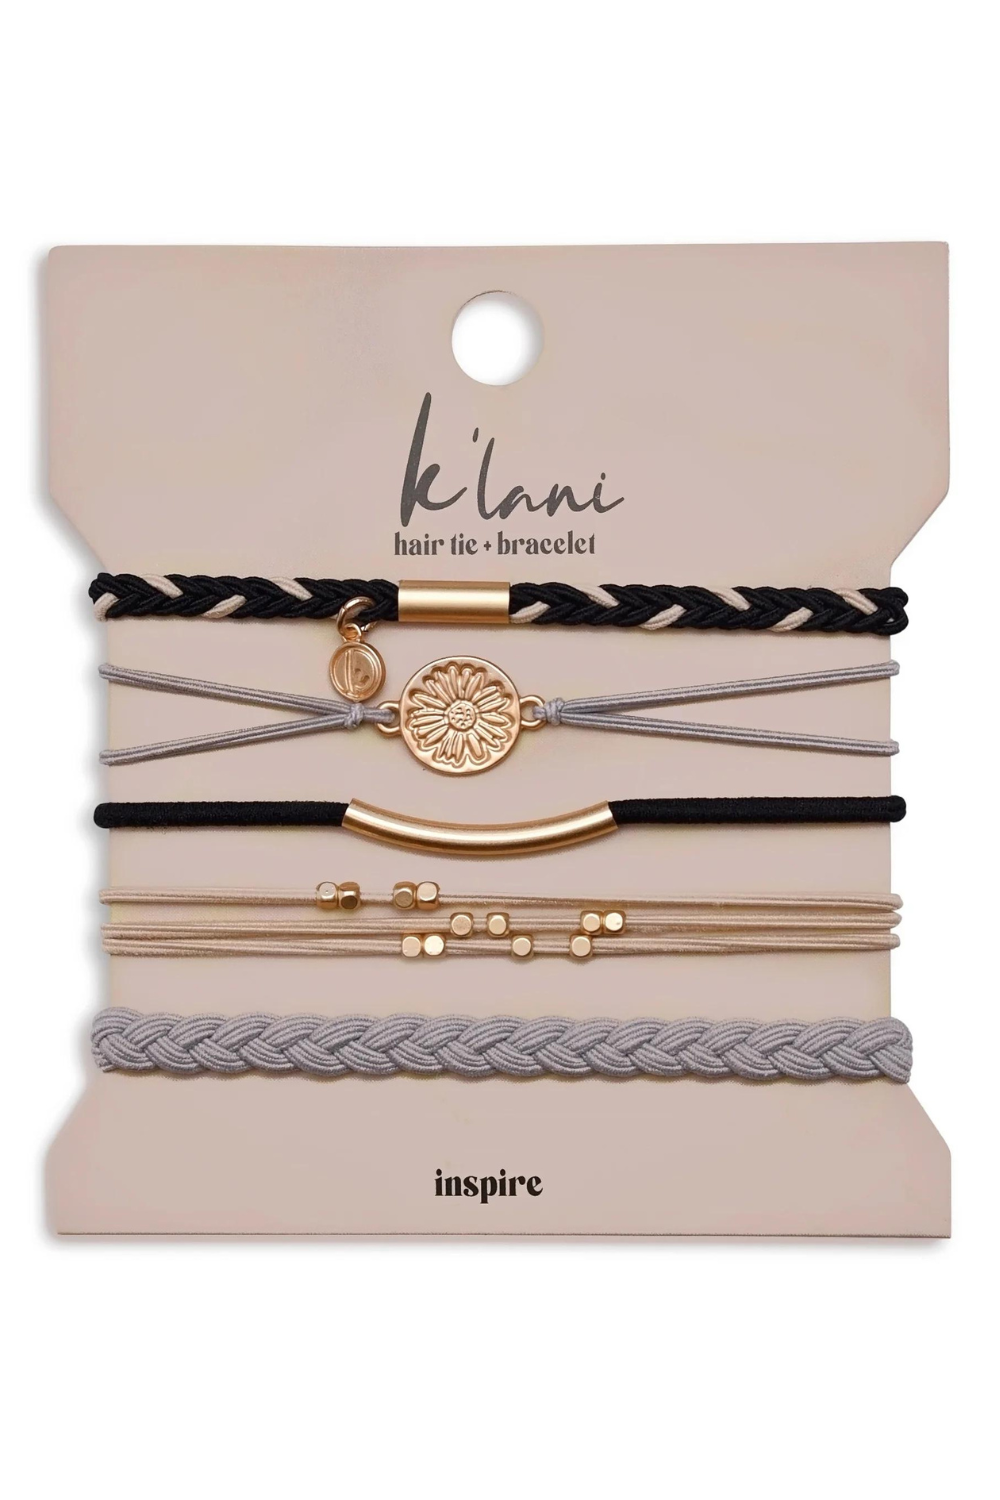 K'lani Hair Tie Bracelet - Inspire